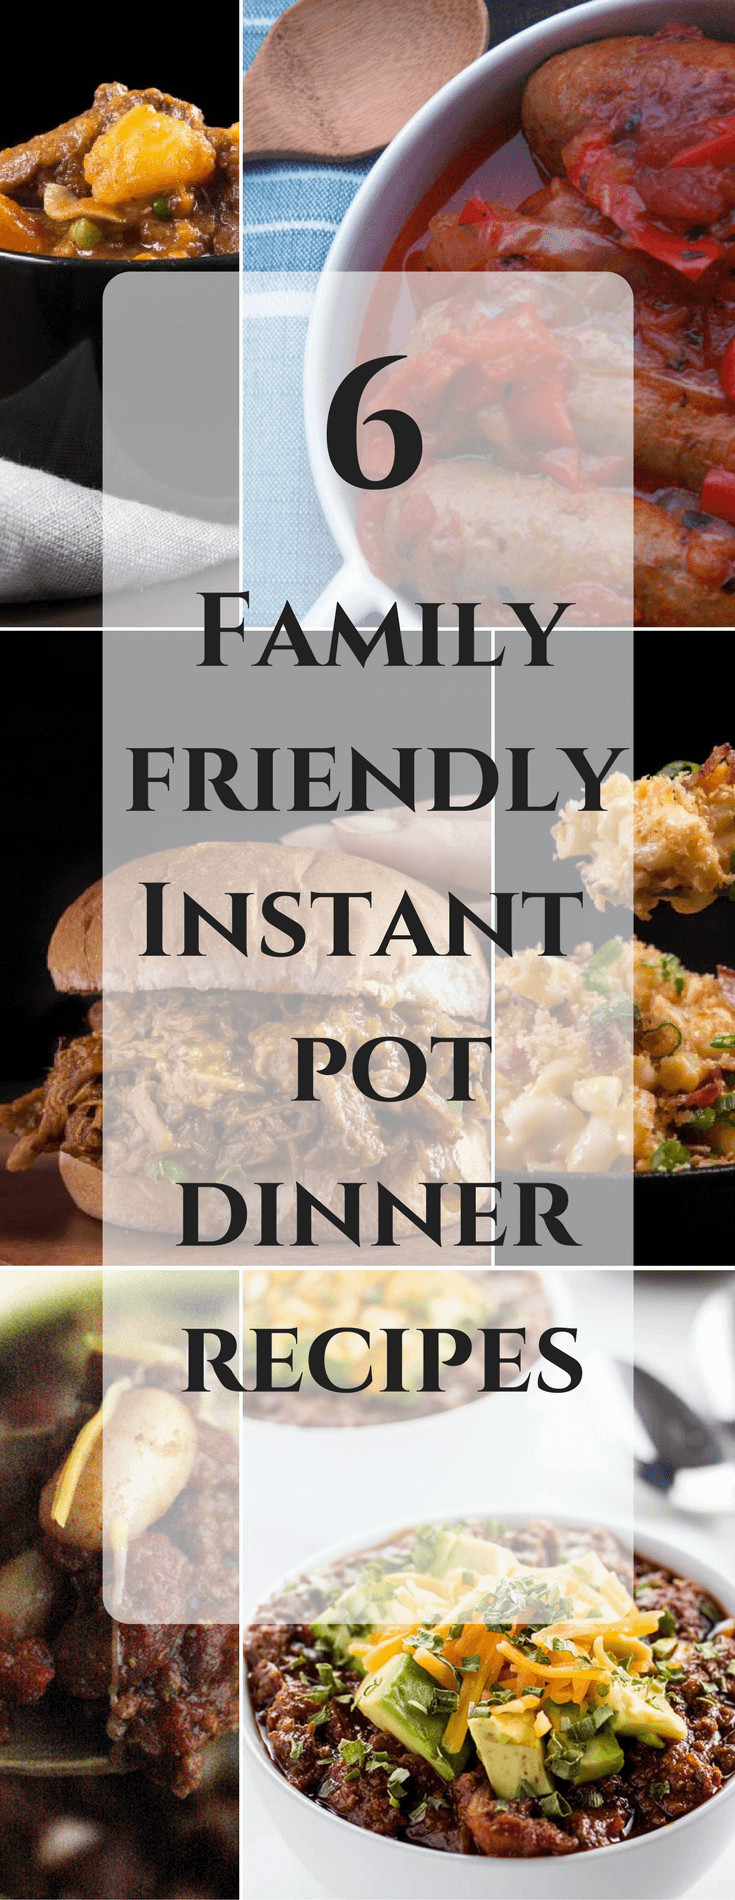 Easy Dinner Recipes For Family Of 6
 6 Family Friendly Instant Pot Dinner Recipes